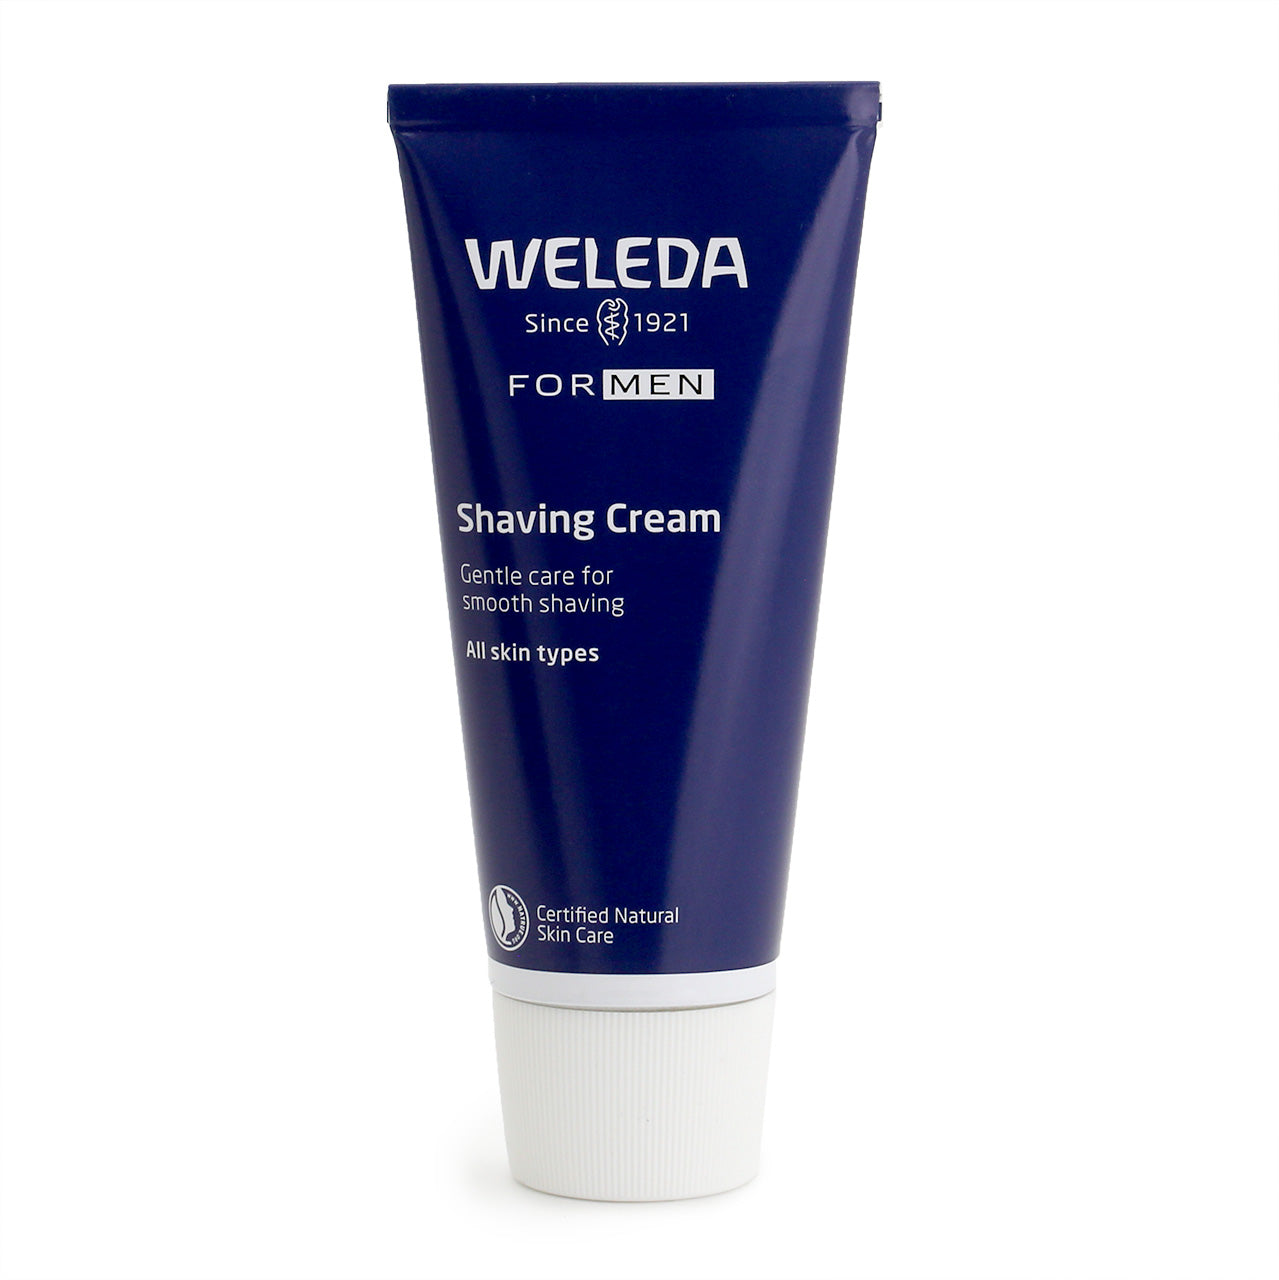 Weleda For Men Shaving Cream, dark blue metal tube